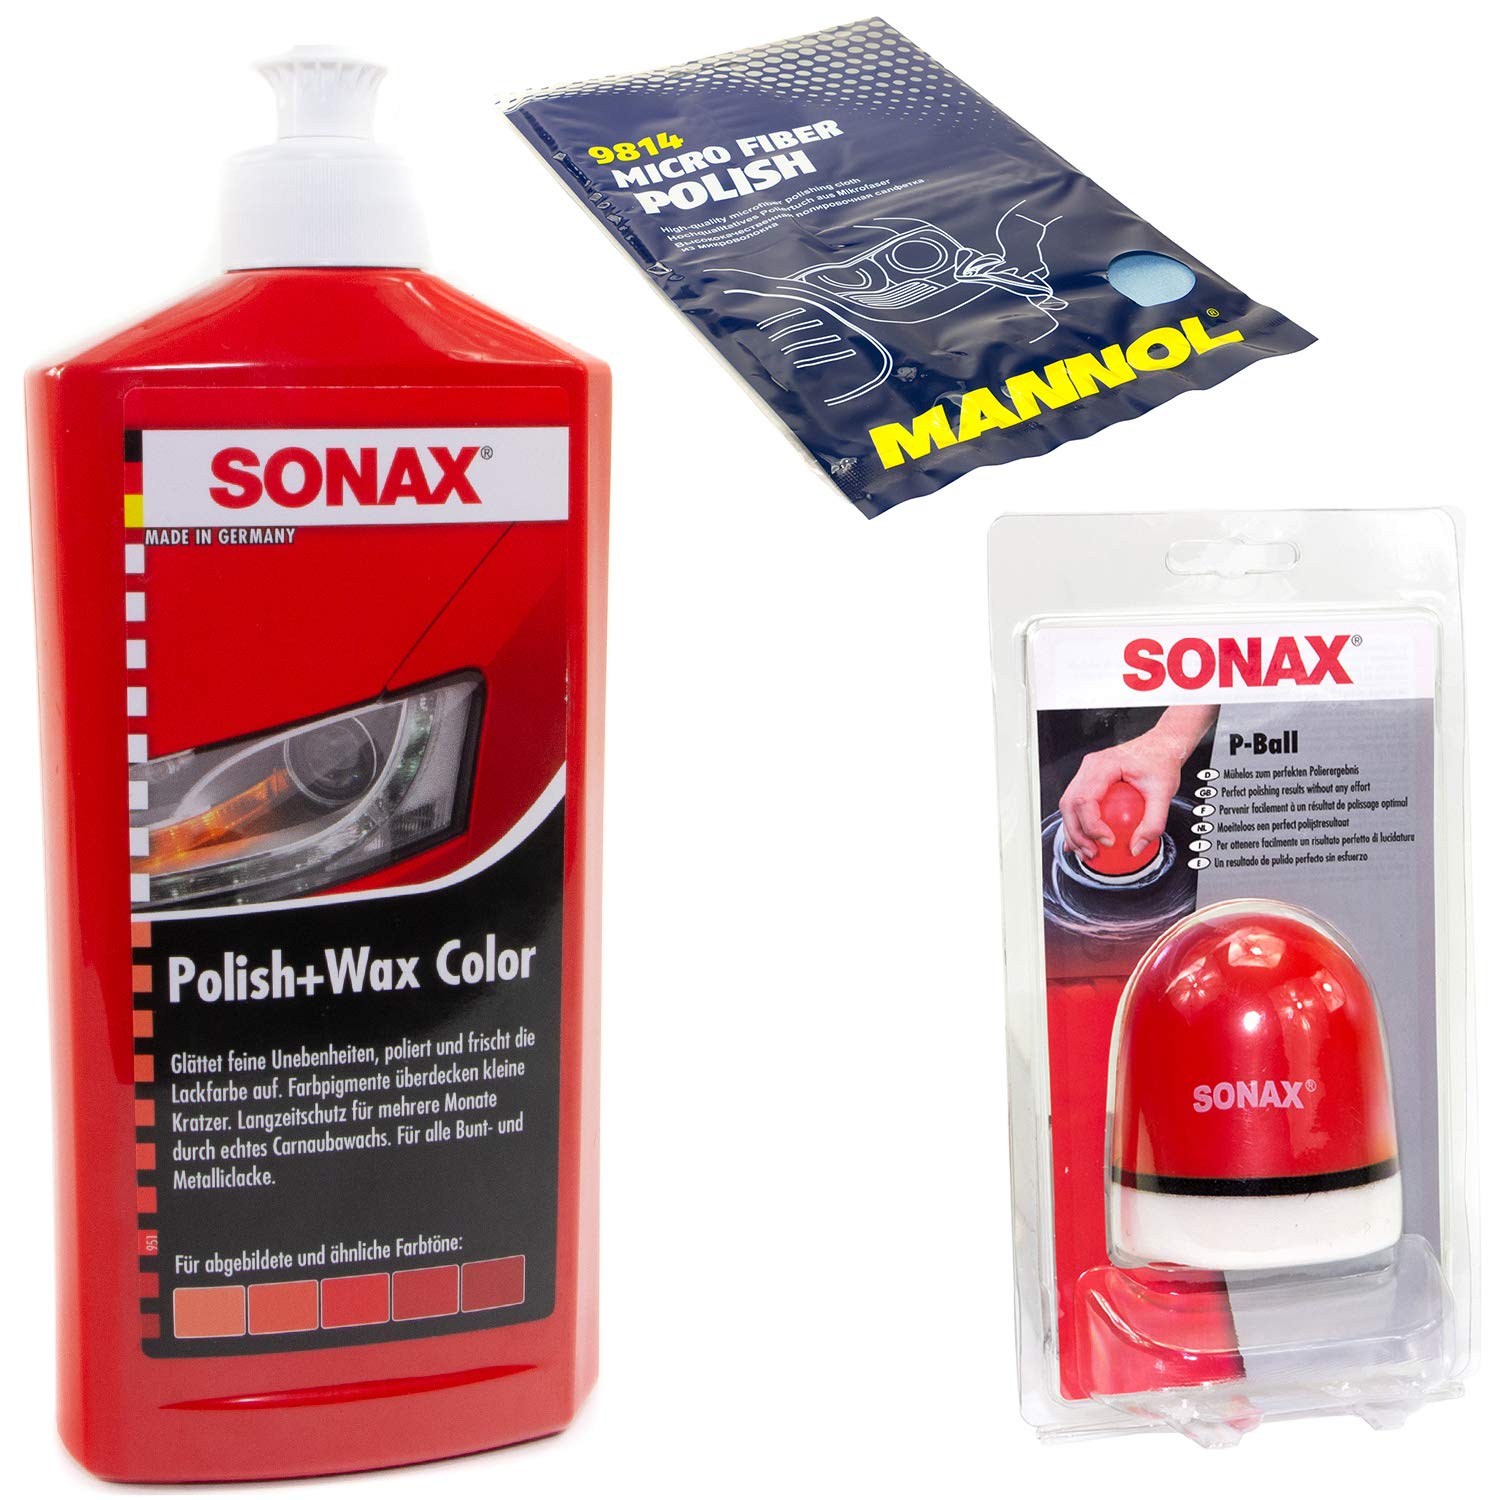 Politur Set Polish und Wax Wachs polieren Lack Color rot SONAX 500 ml + P-Ball Schwamm + Microfasertuch von MVH Bockauf